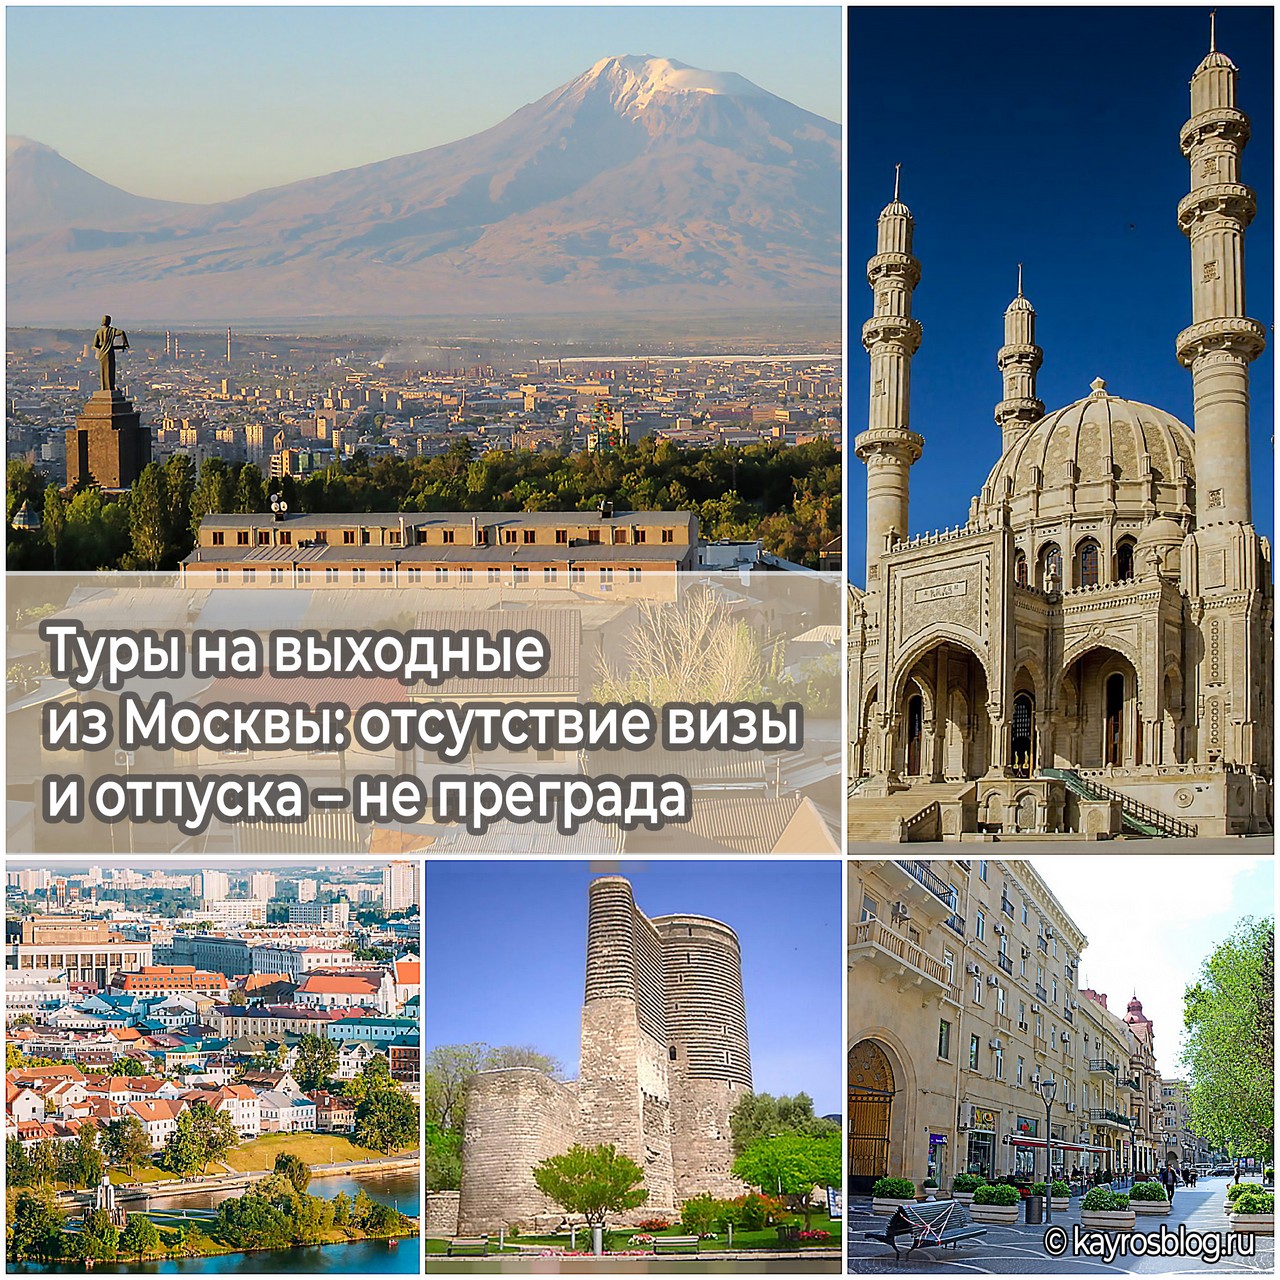 Туры на выходные из Москвы отсутствие визы и отпуска – не преграда